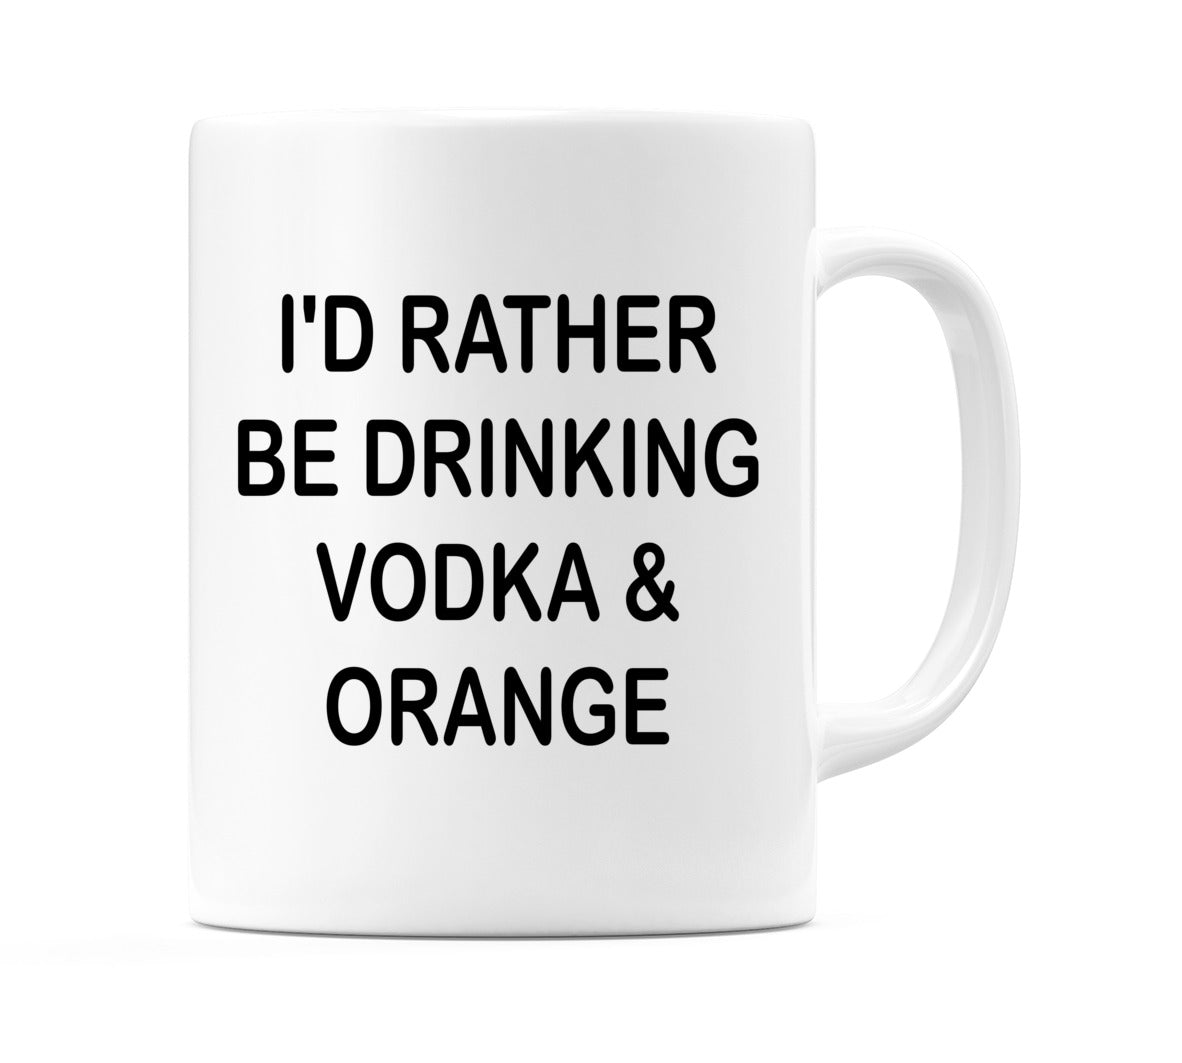 I'd Rather Be Drinking Vodka & Orange Mug